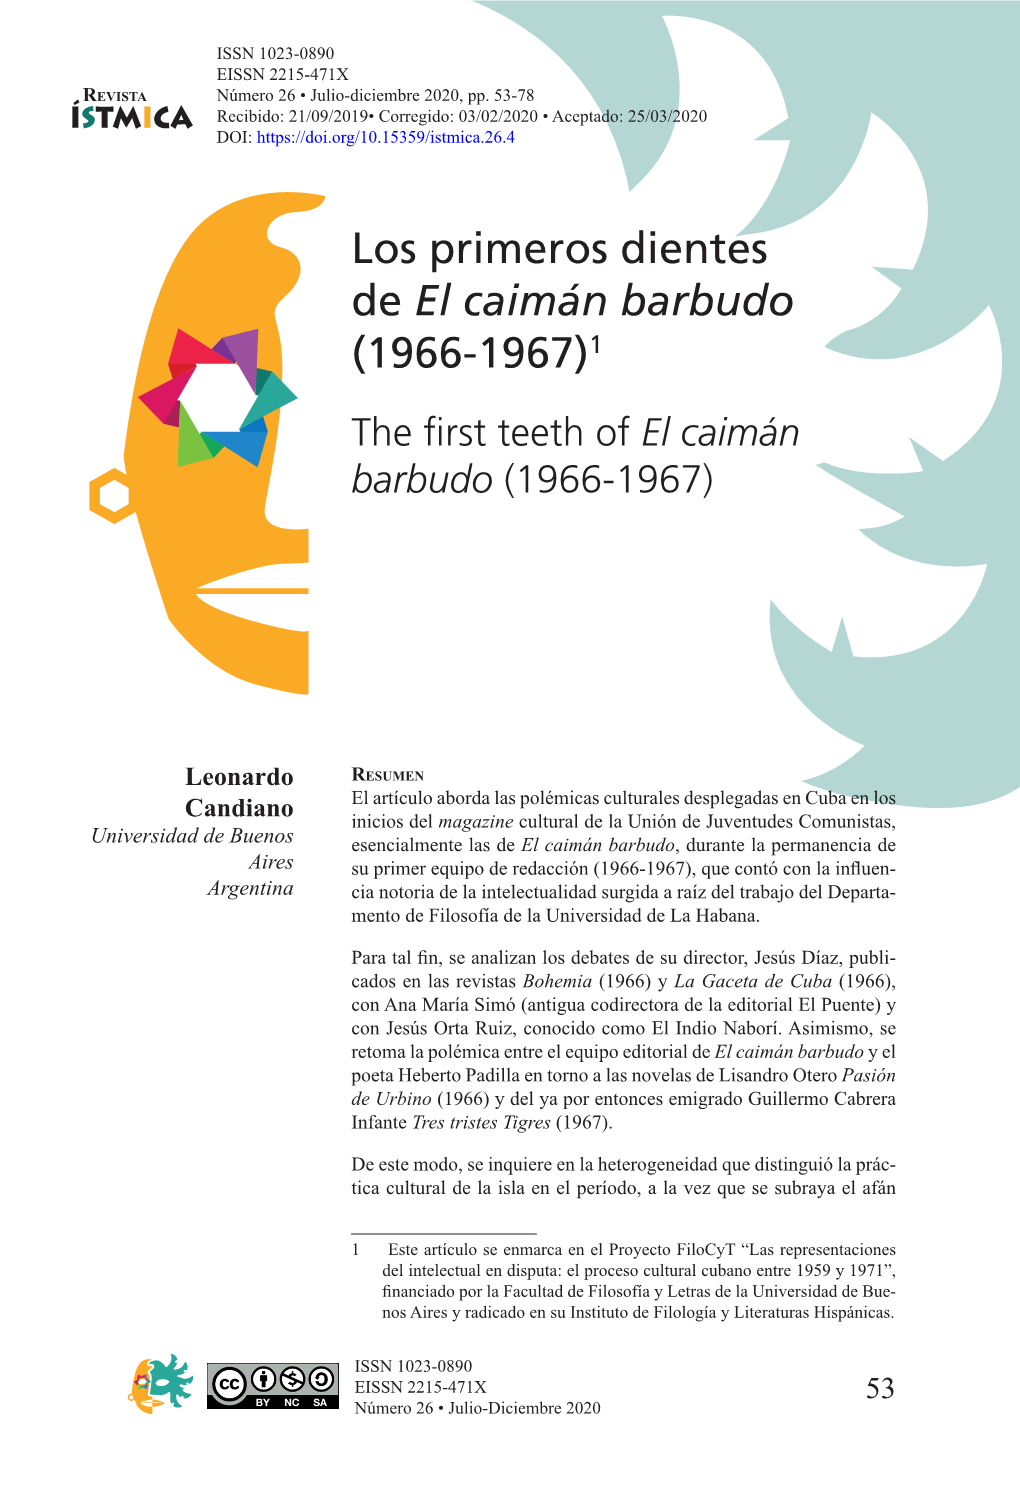 Los Primeros Dientes De El Caimán Barbudo (1966-1967)1 the First Teeth Ofel Caimán Barbudo (1966-1967)